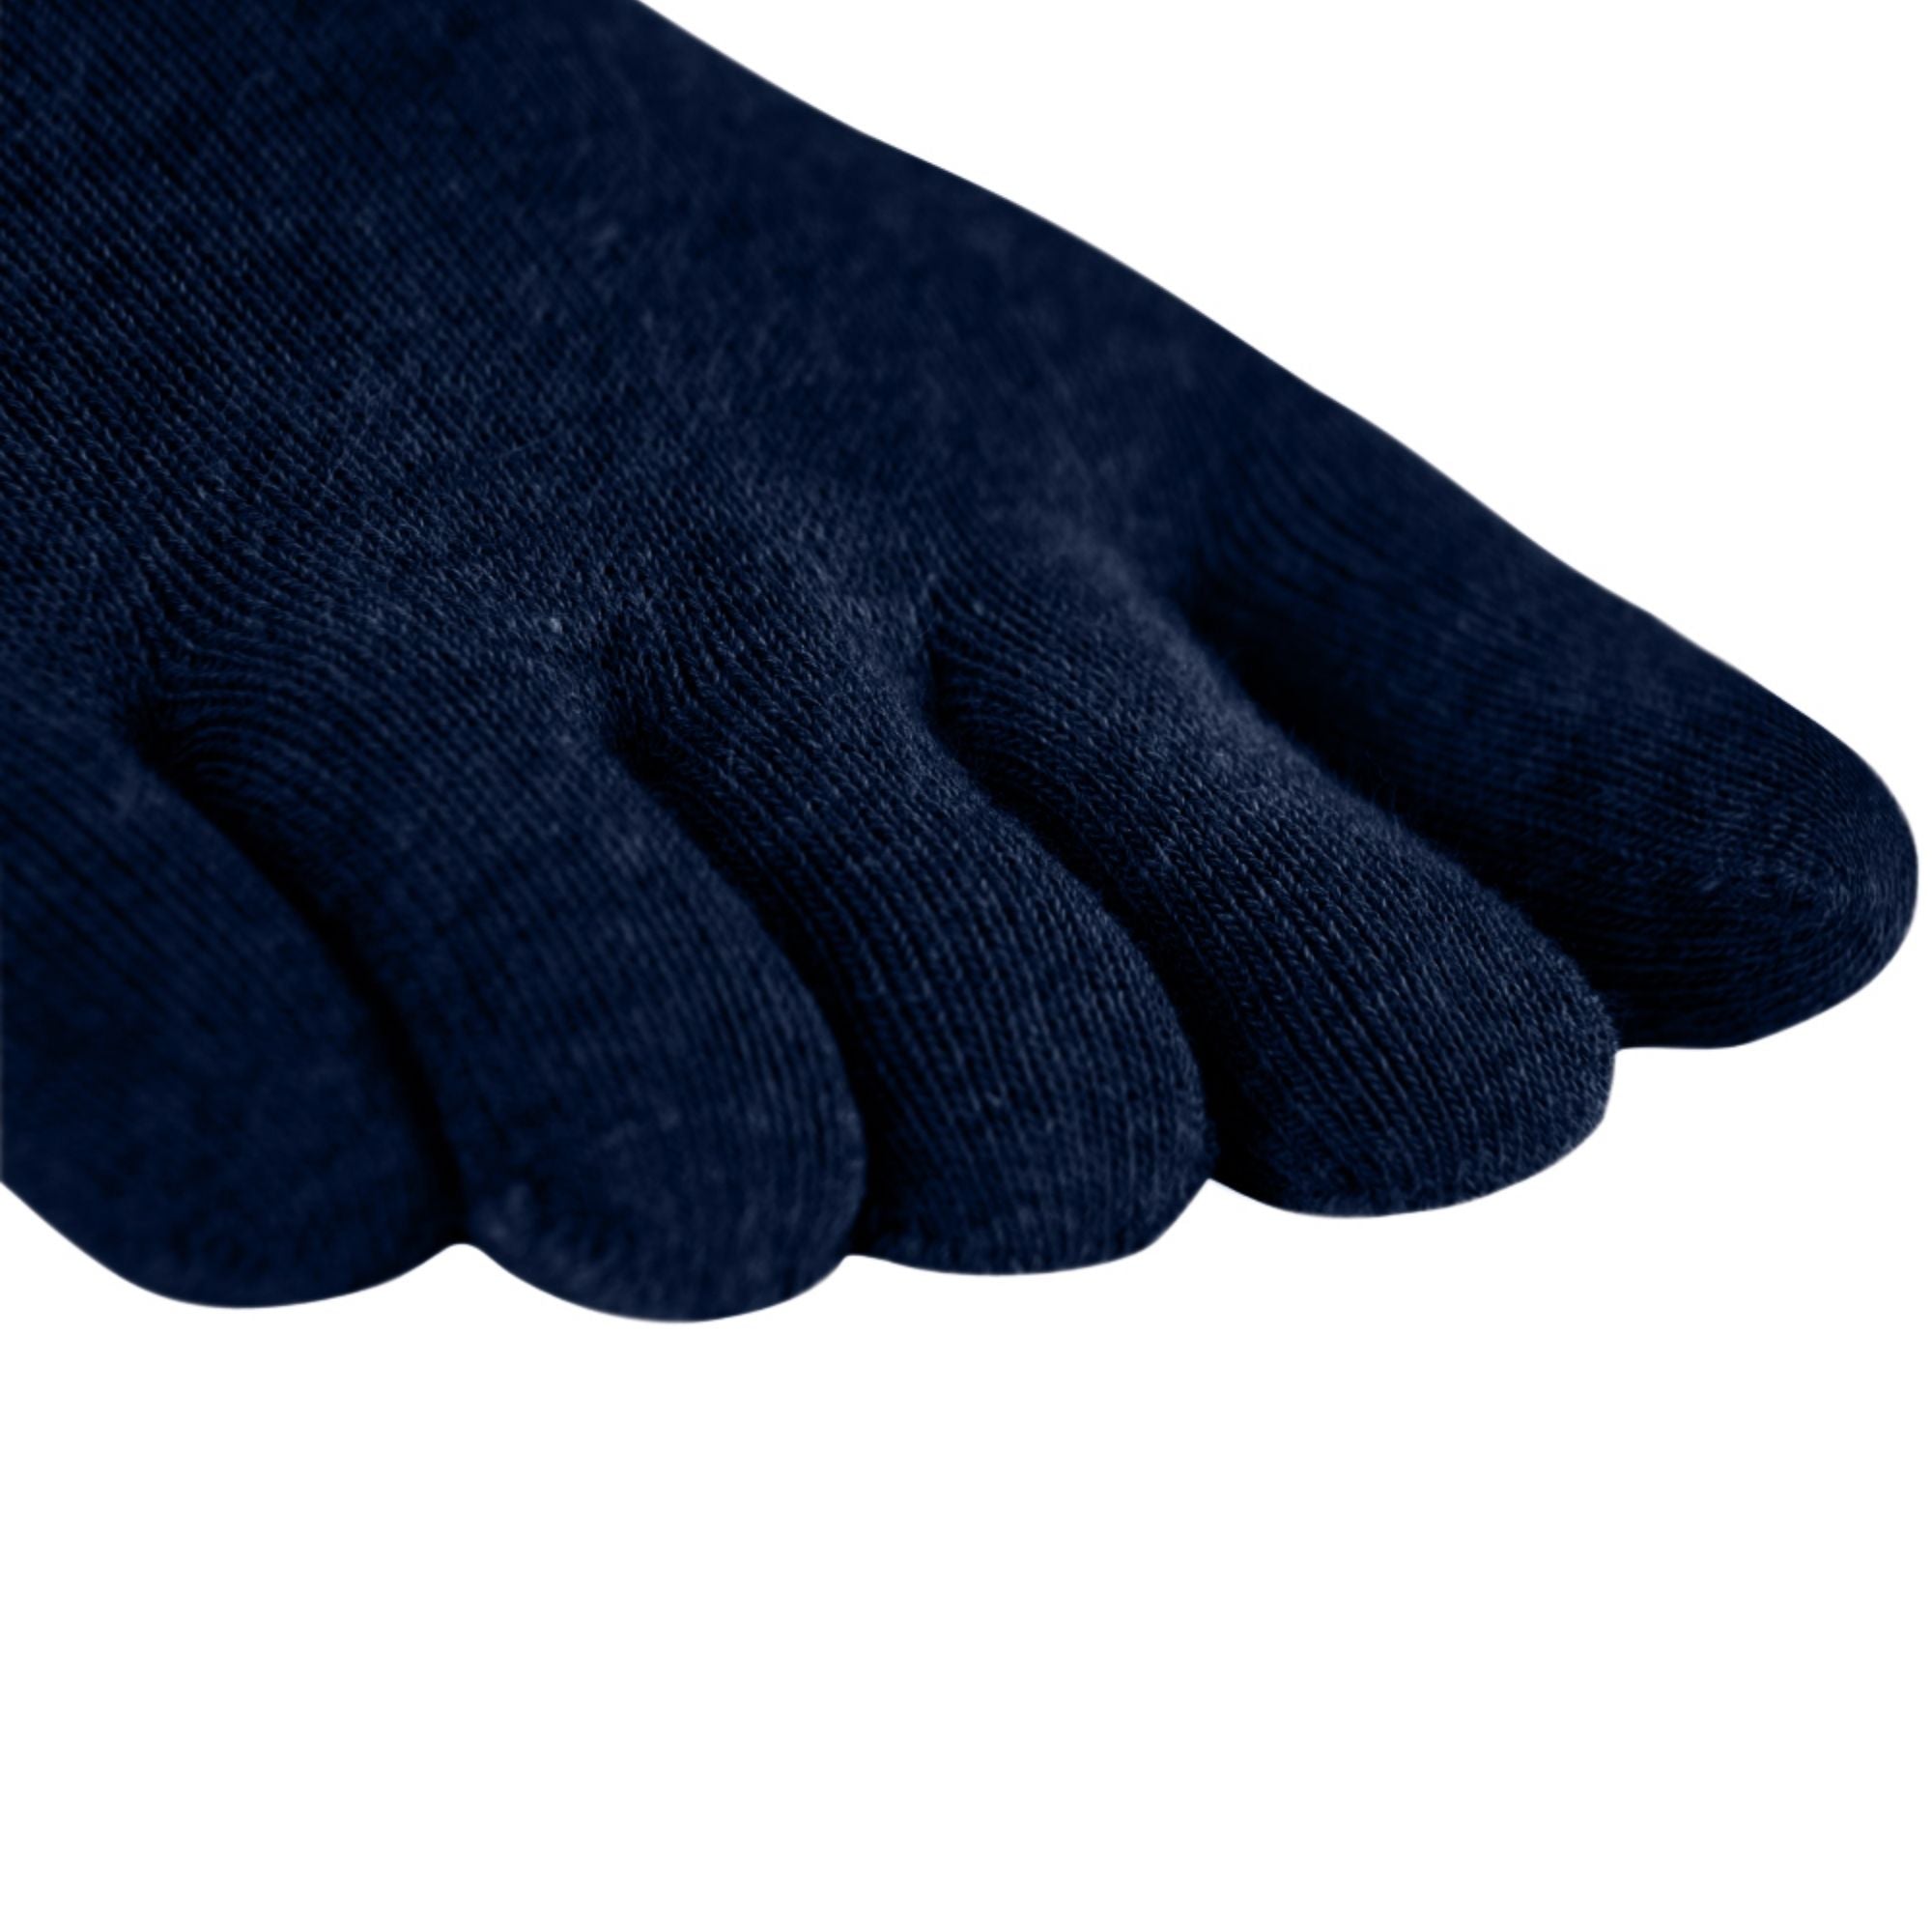 Paquete de 3 calcetines deportivos de Coolmax y algodón de Knitido en azul marino